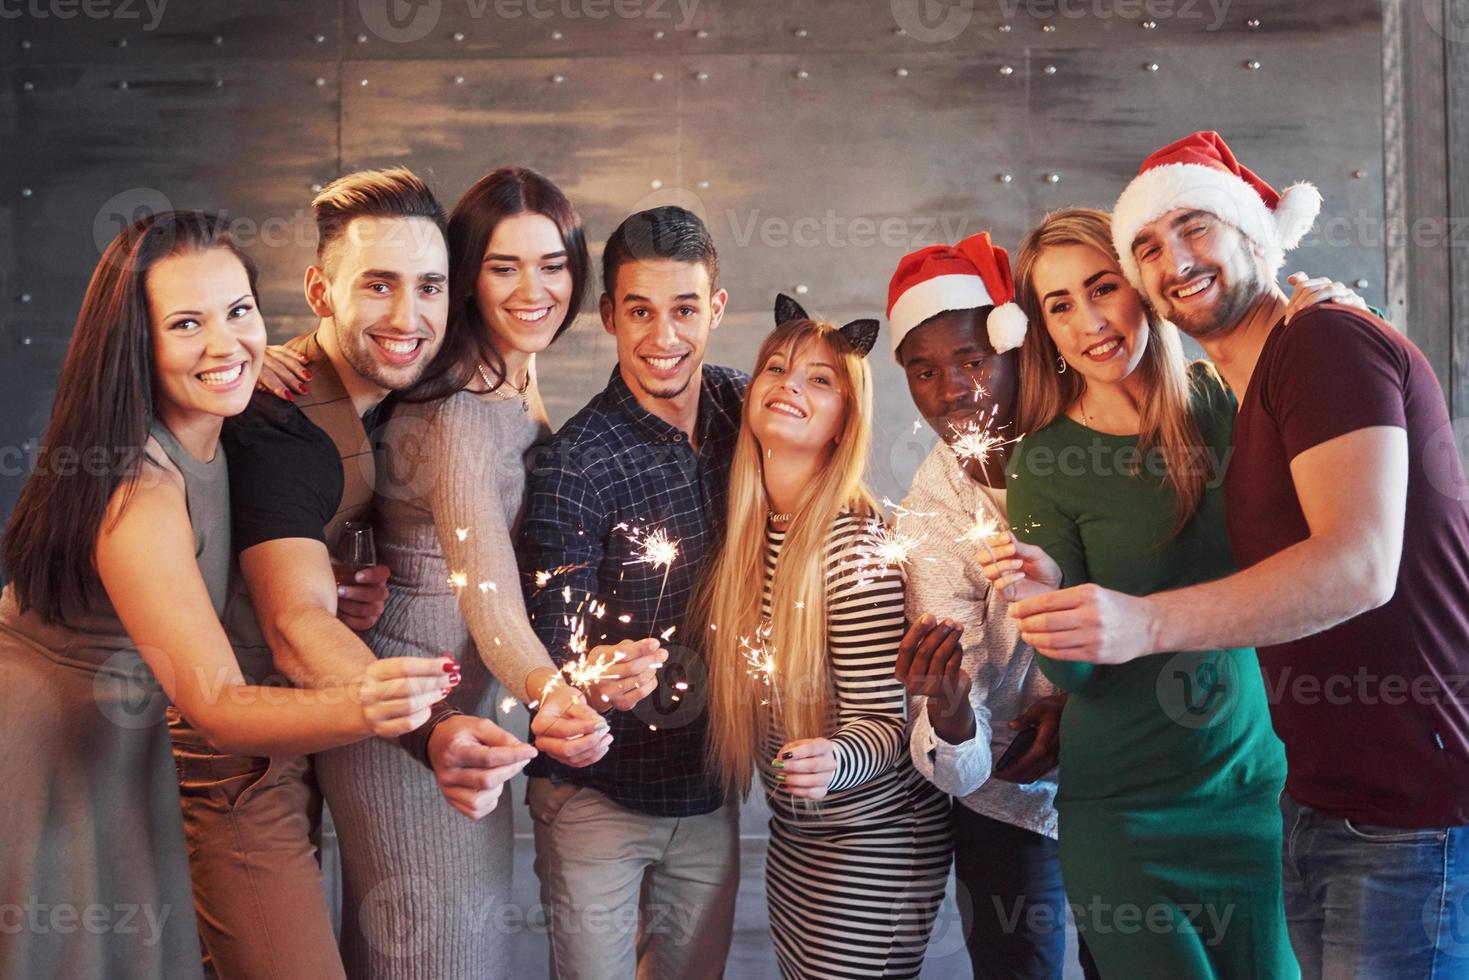 festa com amigos. grupo de jovens alegres carregando estrelinhas e taças de champanhe foto